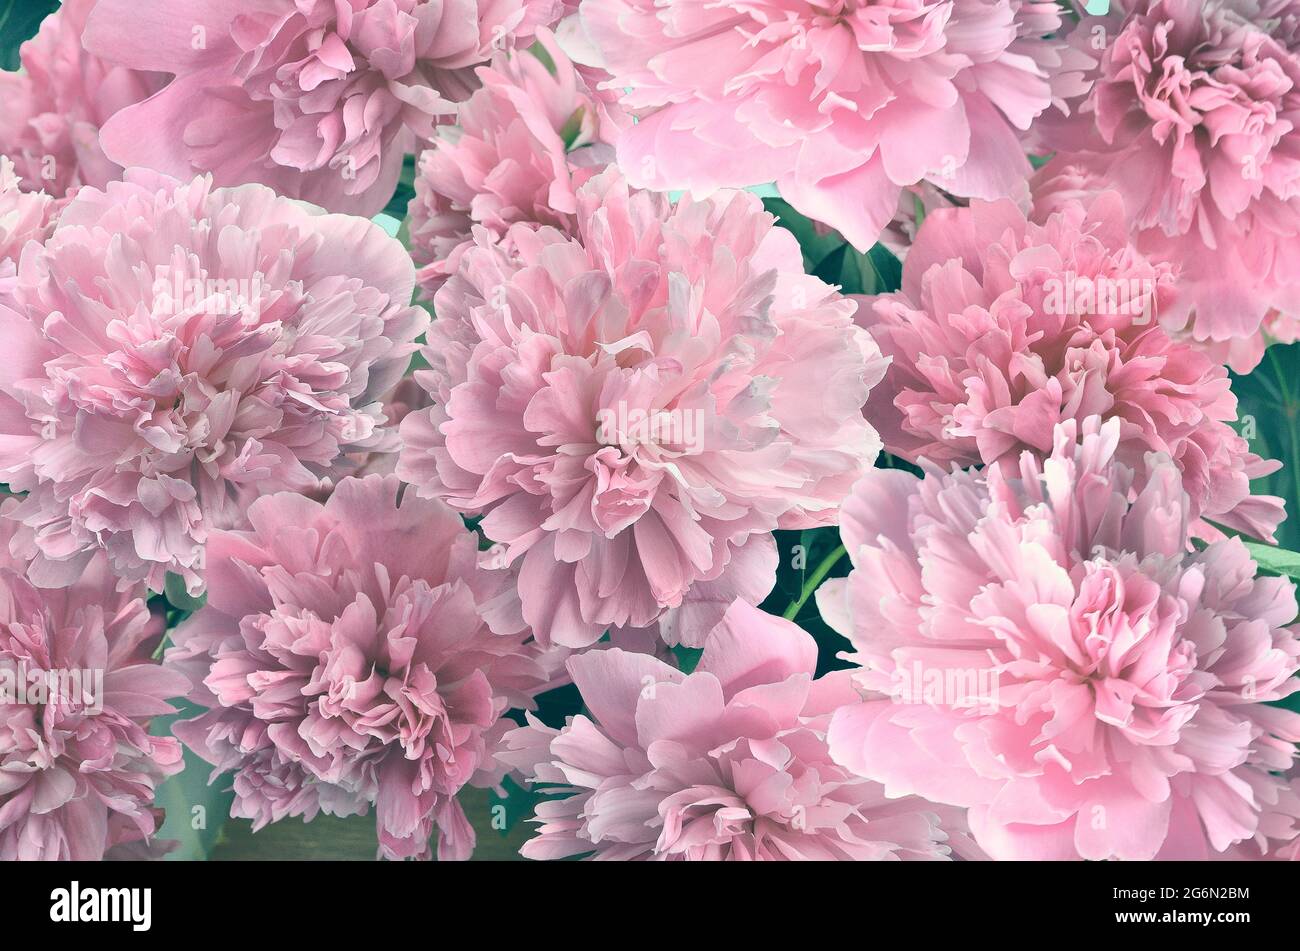 Flores de color rosa pálido y esponjosas peonías - fondo natural festivo  floral. Pétalos de flores tiernos en tonos vintage. Tarjeta de felicitación  o invitación a cualquier fiesta Fotografía de stock - Alamy